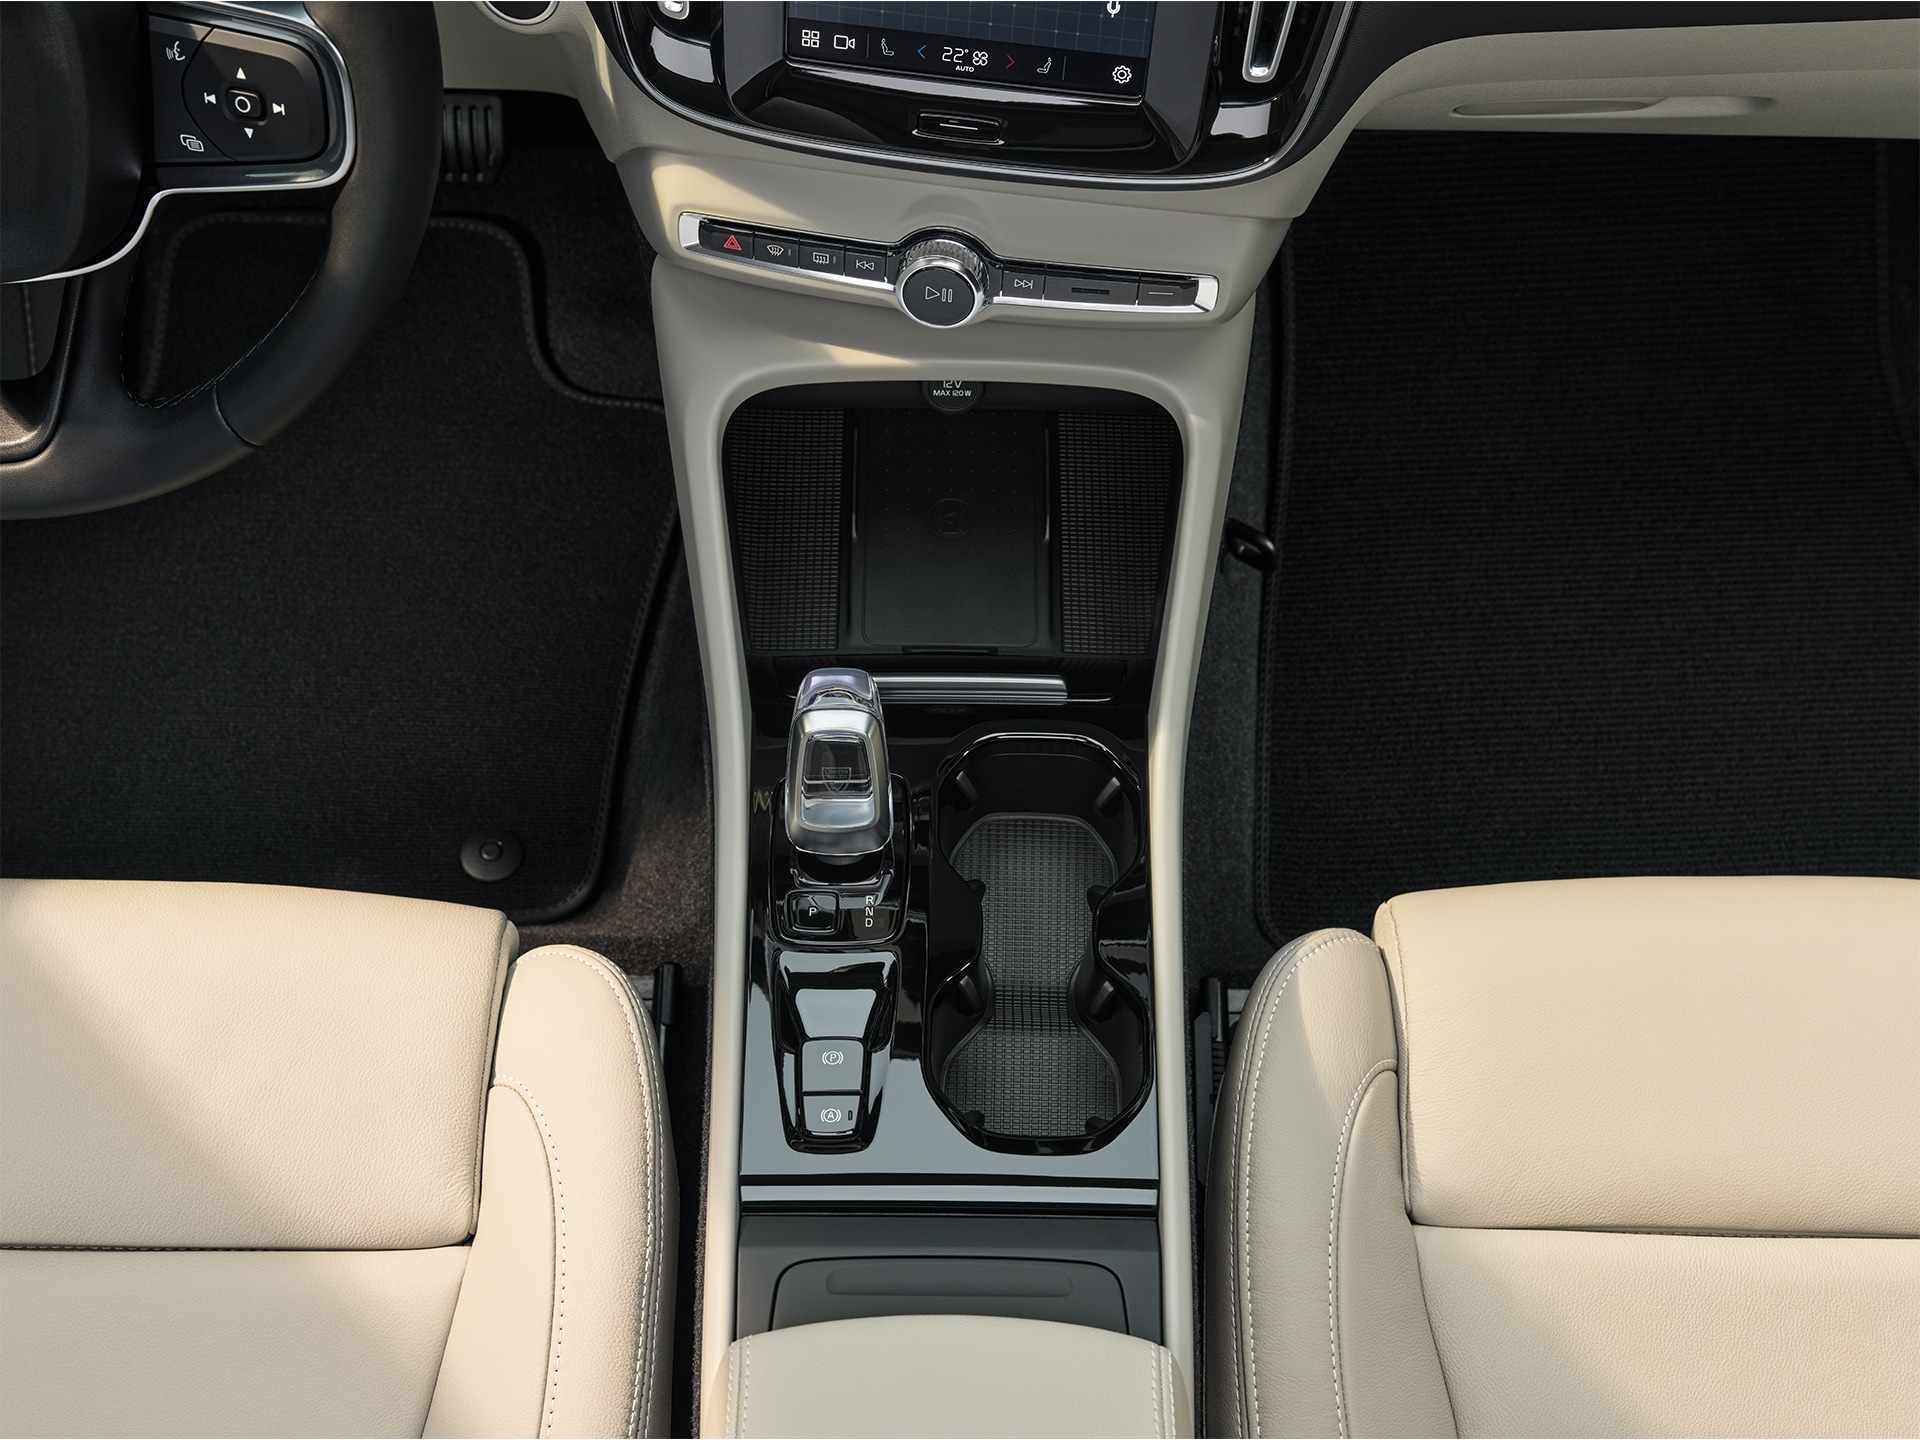 Ērts, kvalitatīvs un daudzpusīgs Volvo XC40 apvidus automašīnas salons.